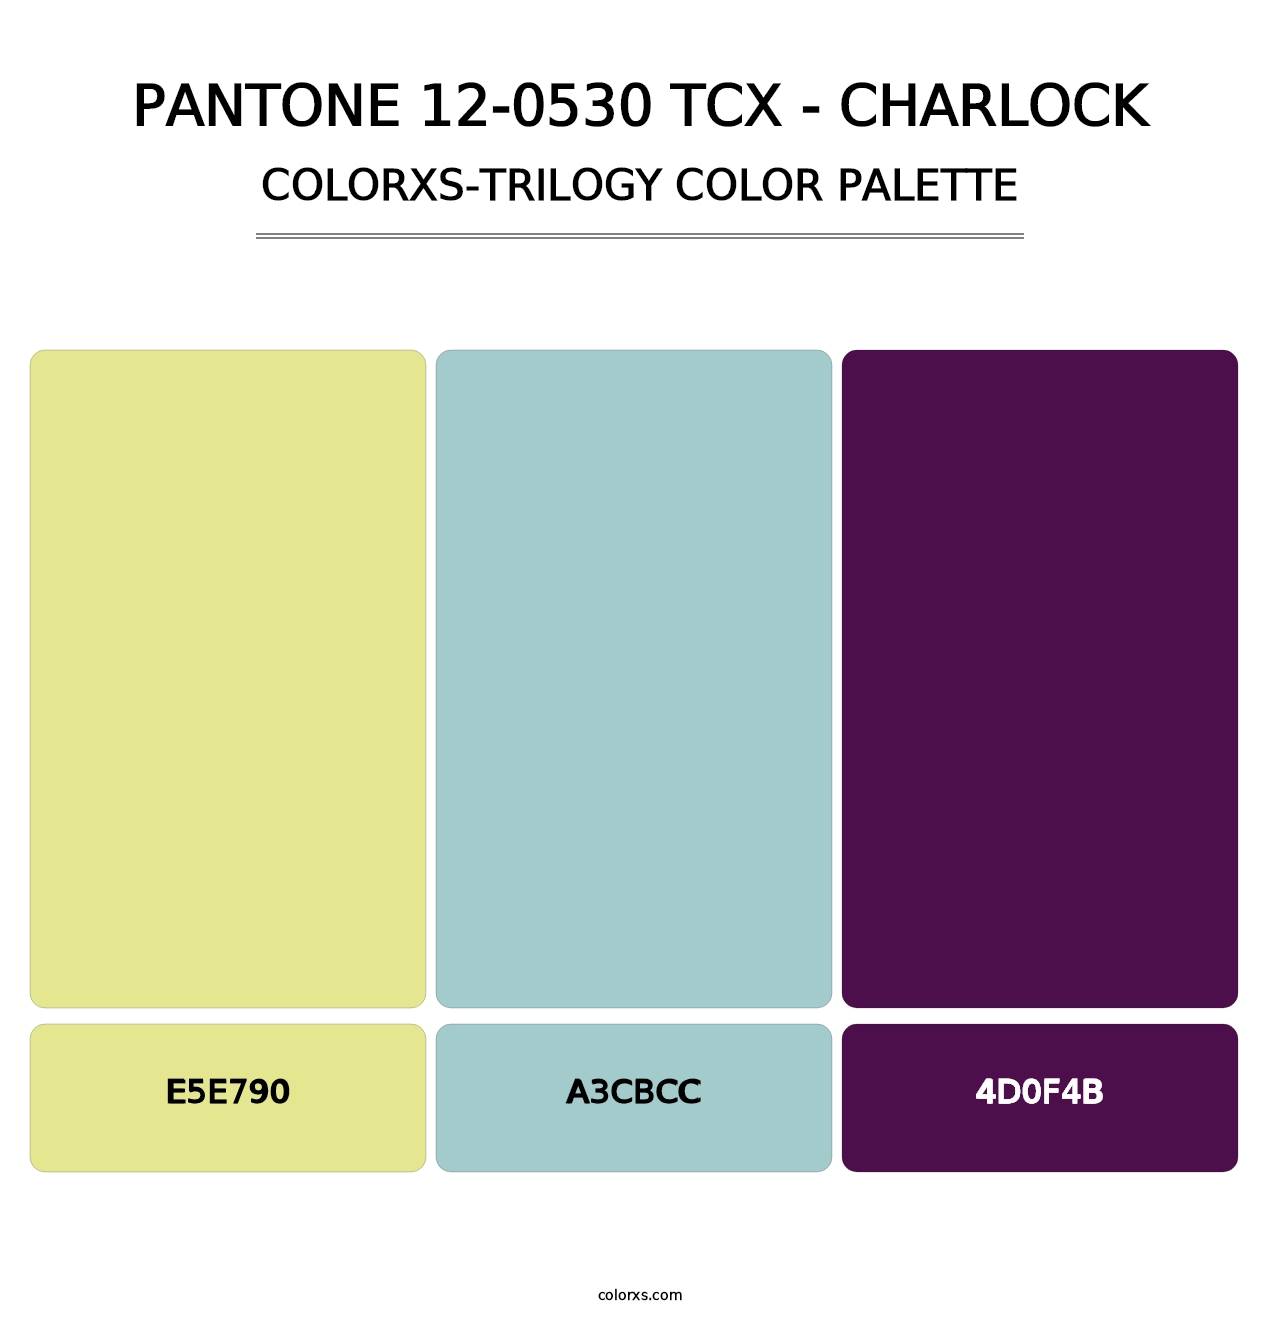 PANTONE 12-0530 TCX - Charlock - Colorxs Trilogy Palette